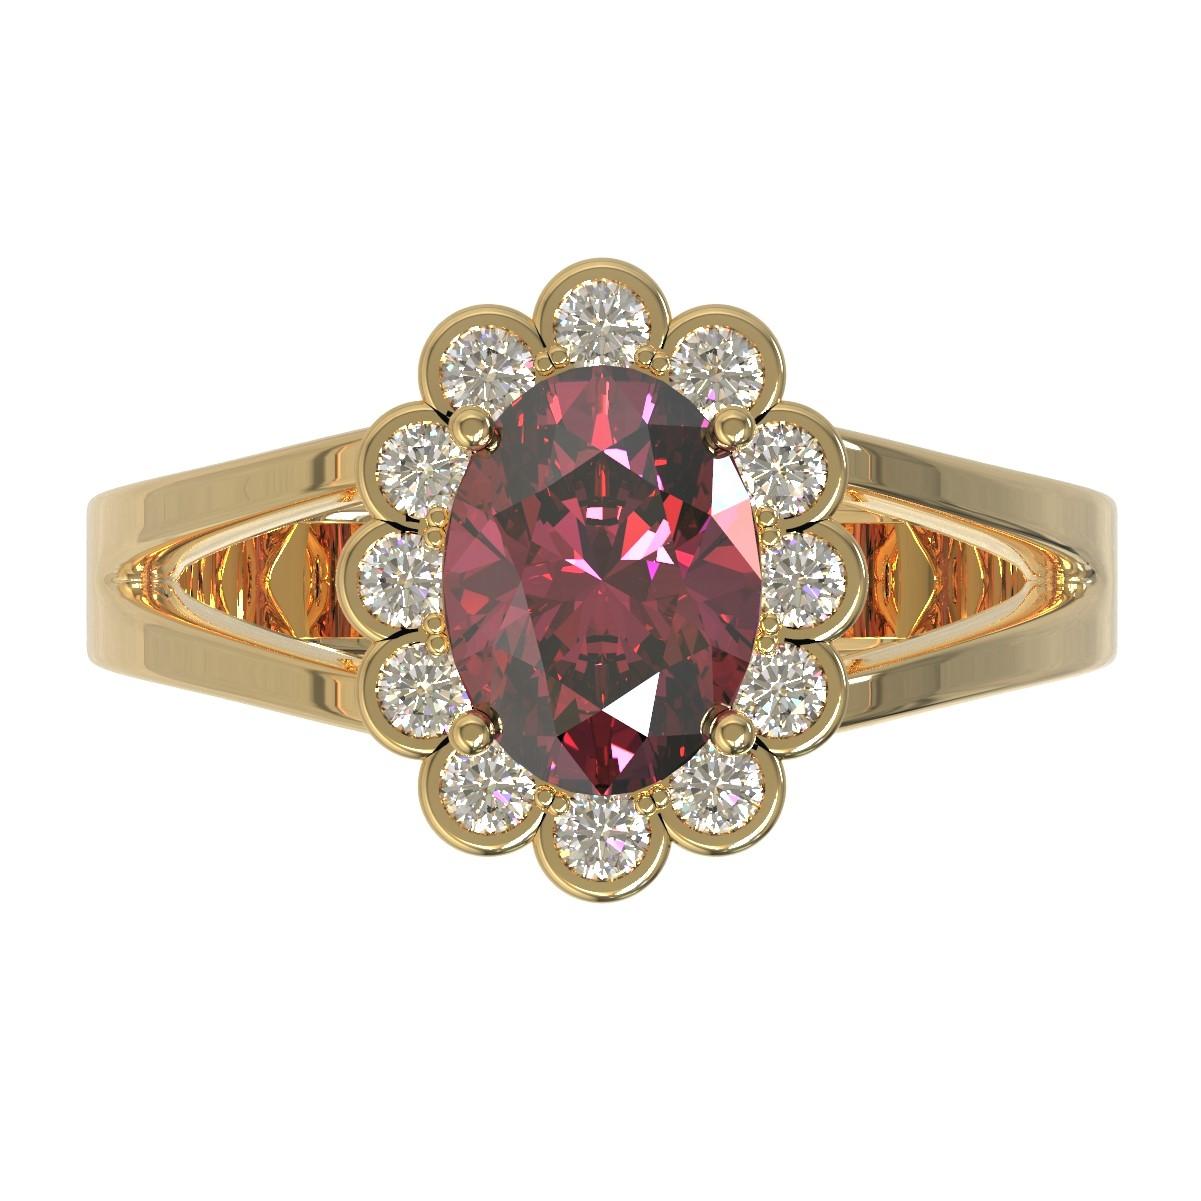 Kian Design 2.03 Carat Oval Rhodolite Diamonds Cocktail Ring in 18 Carat Gold 1